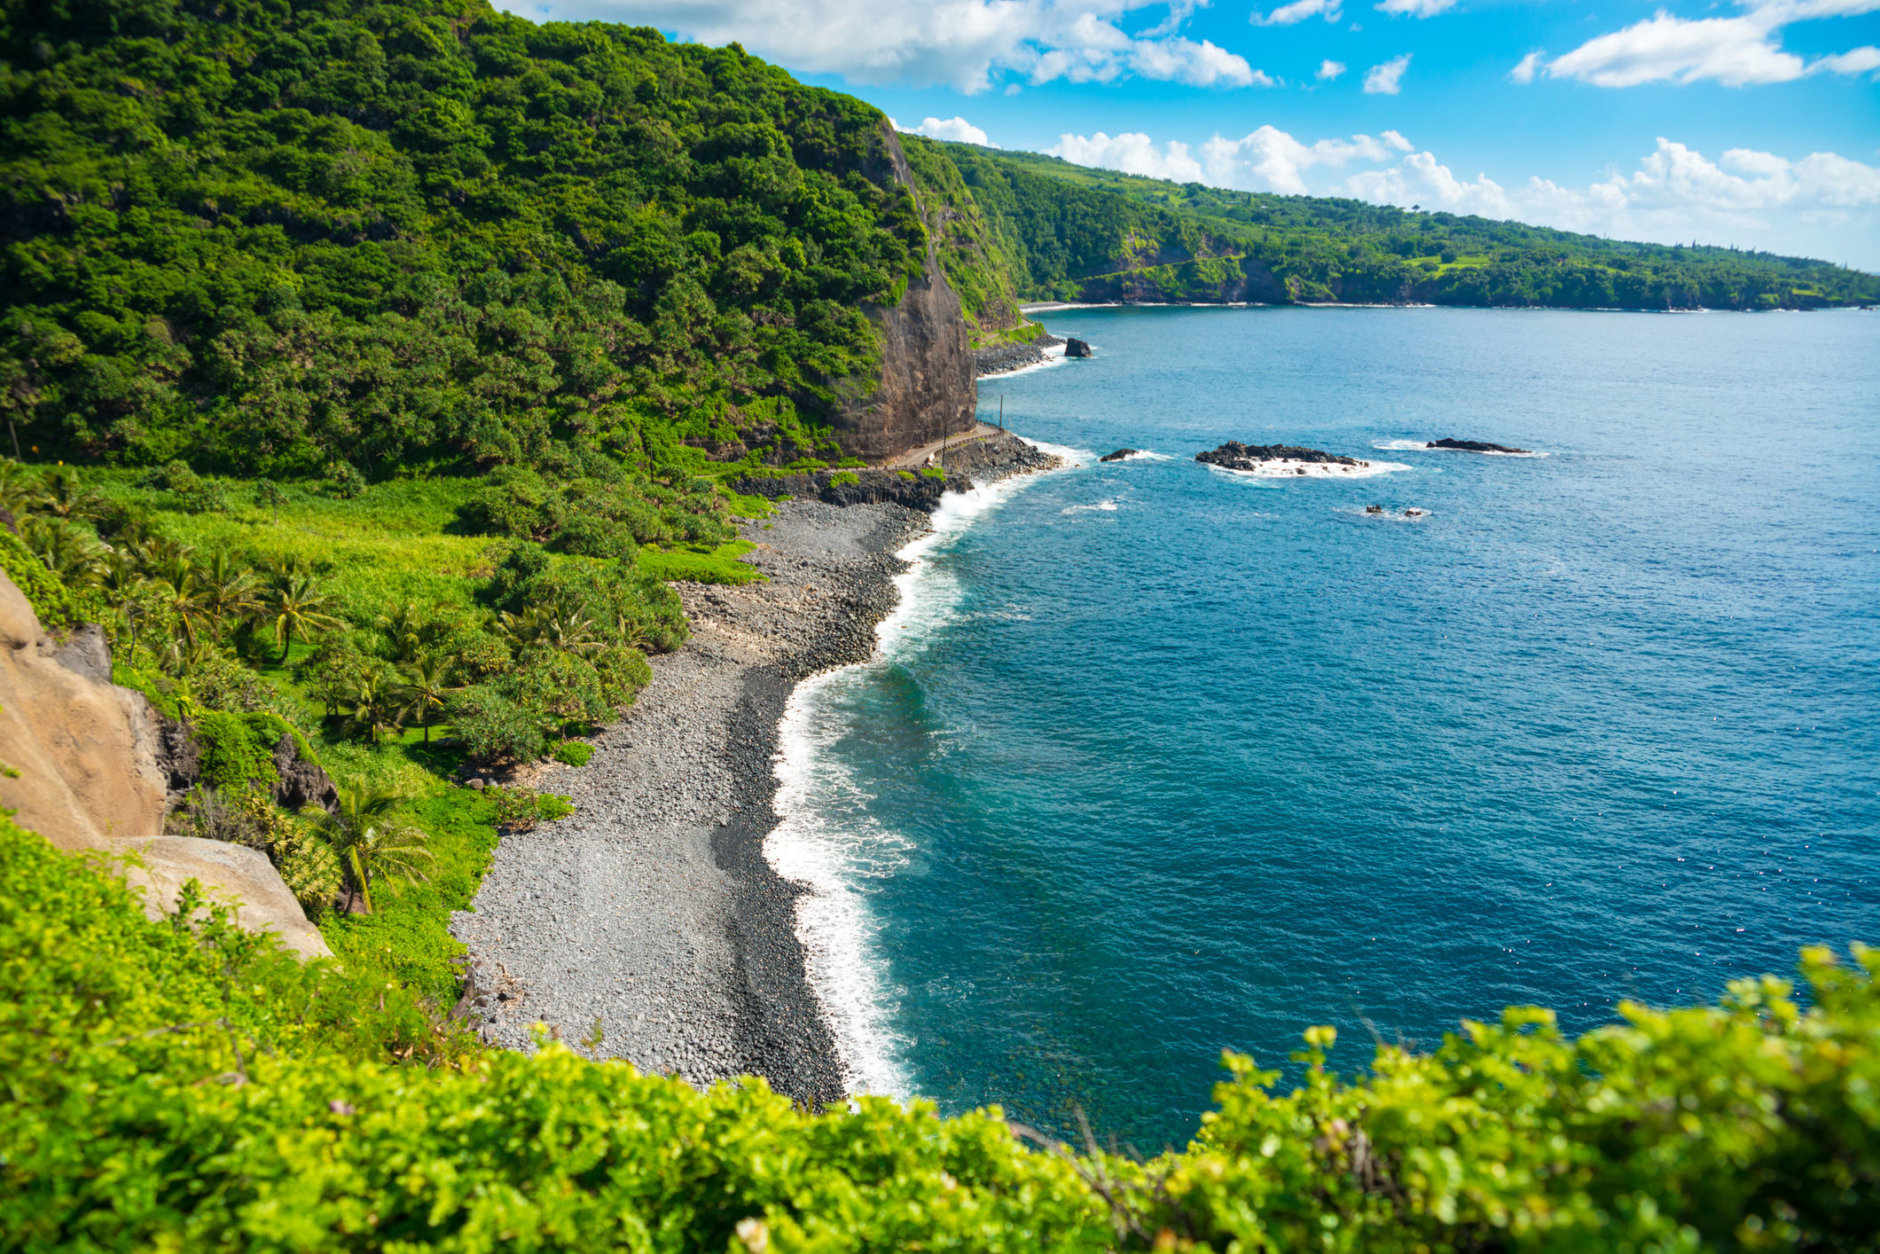 Beautiful rocky beach on the island of Maui, Hawaii, USA